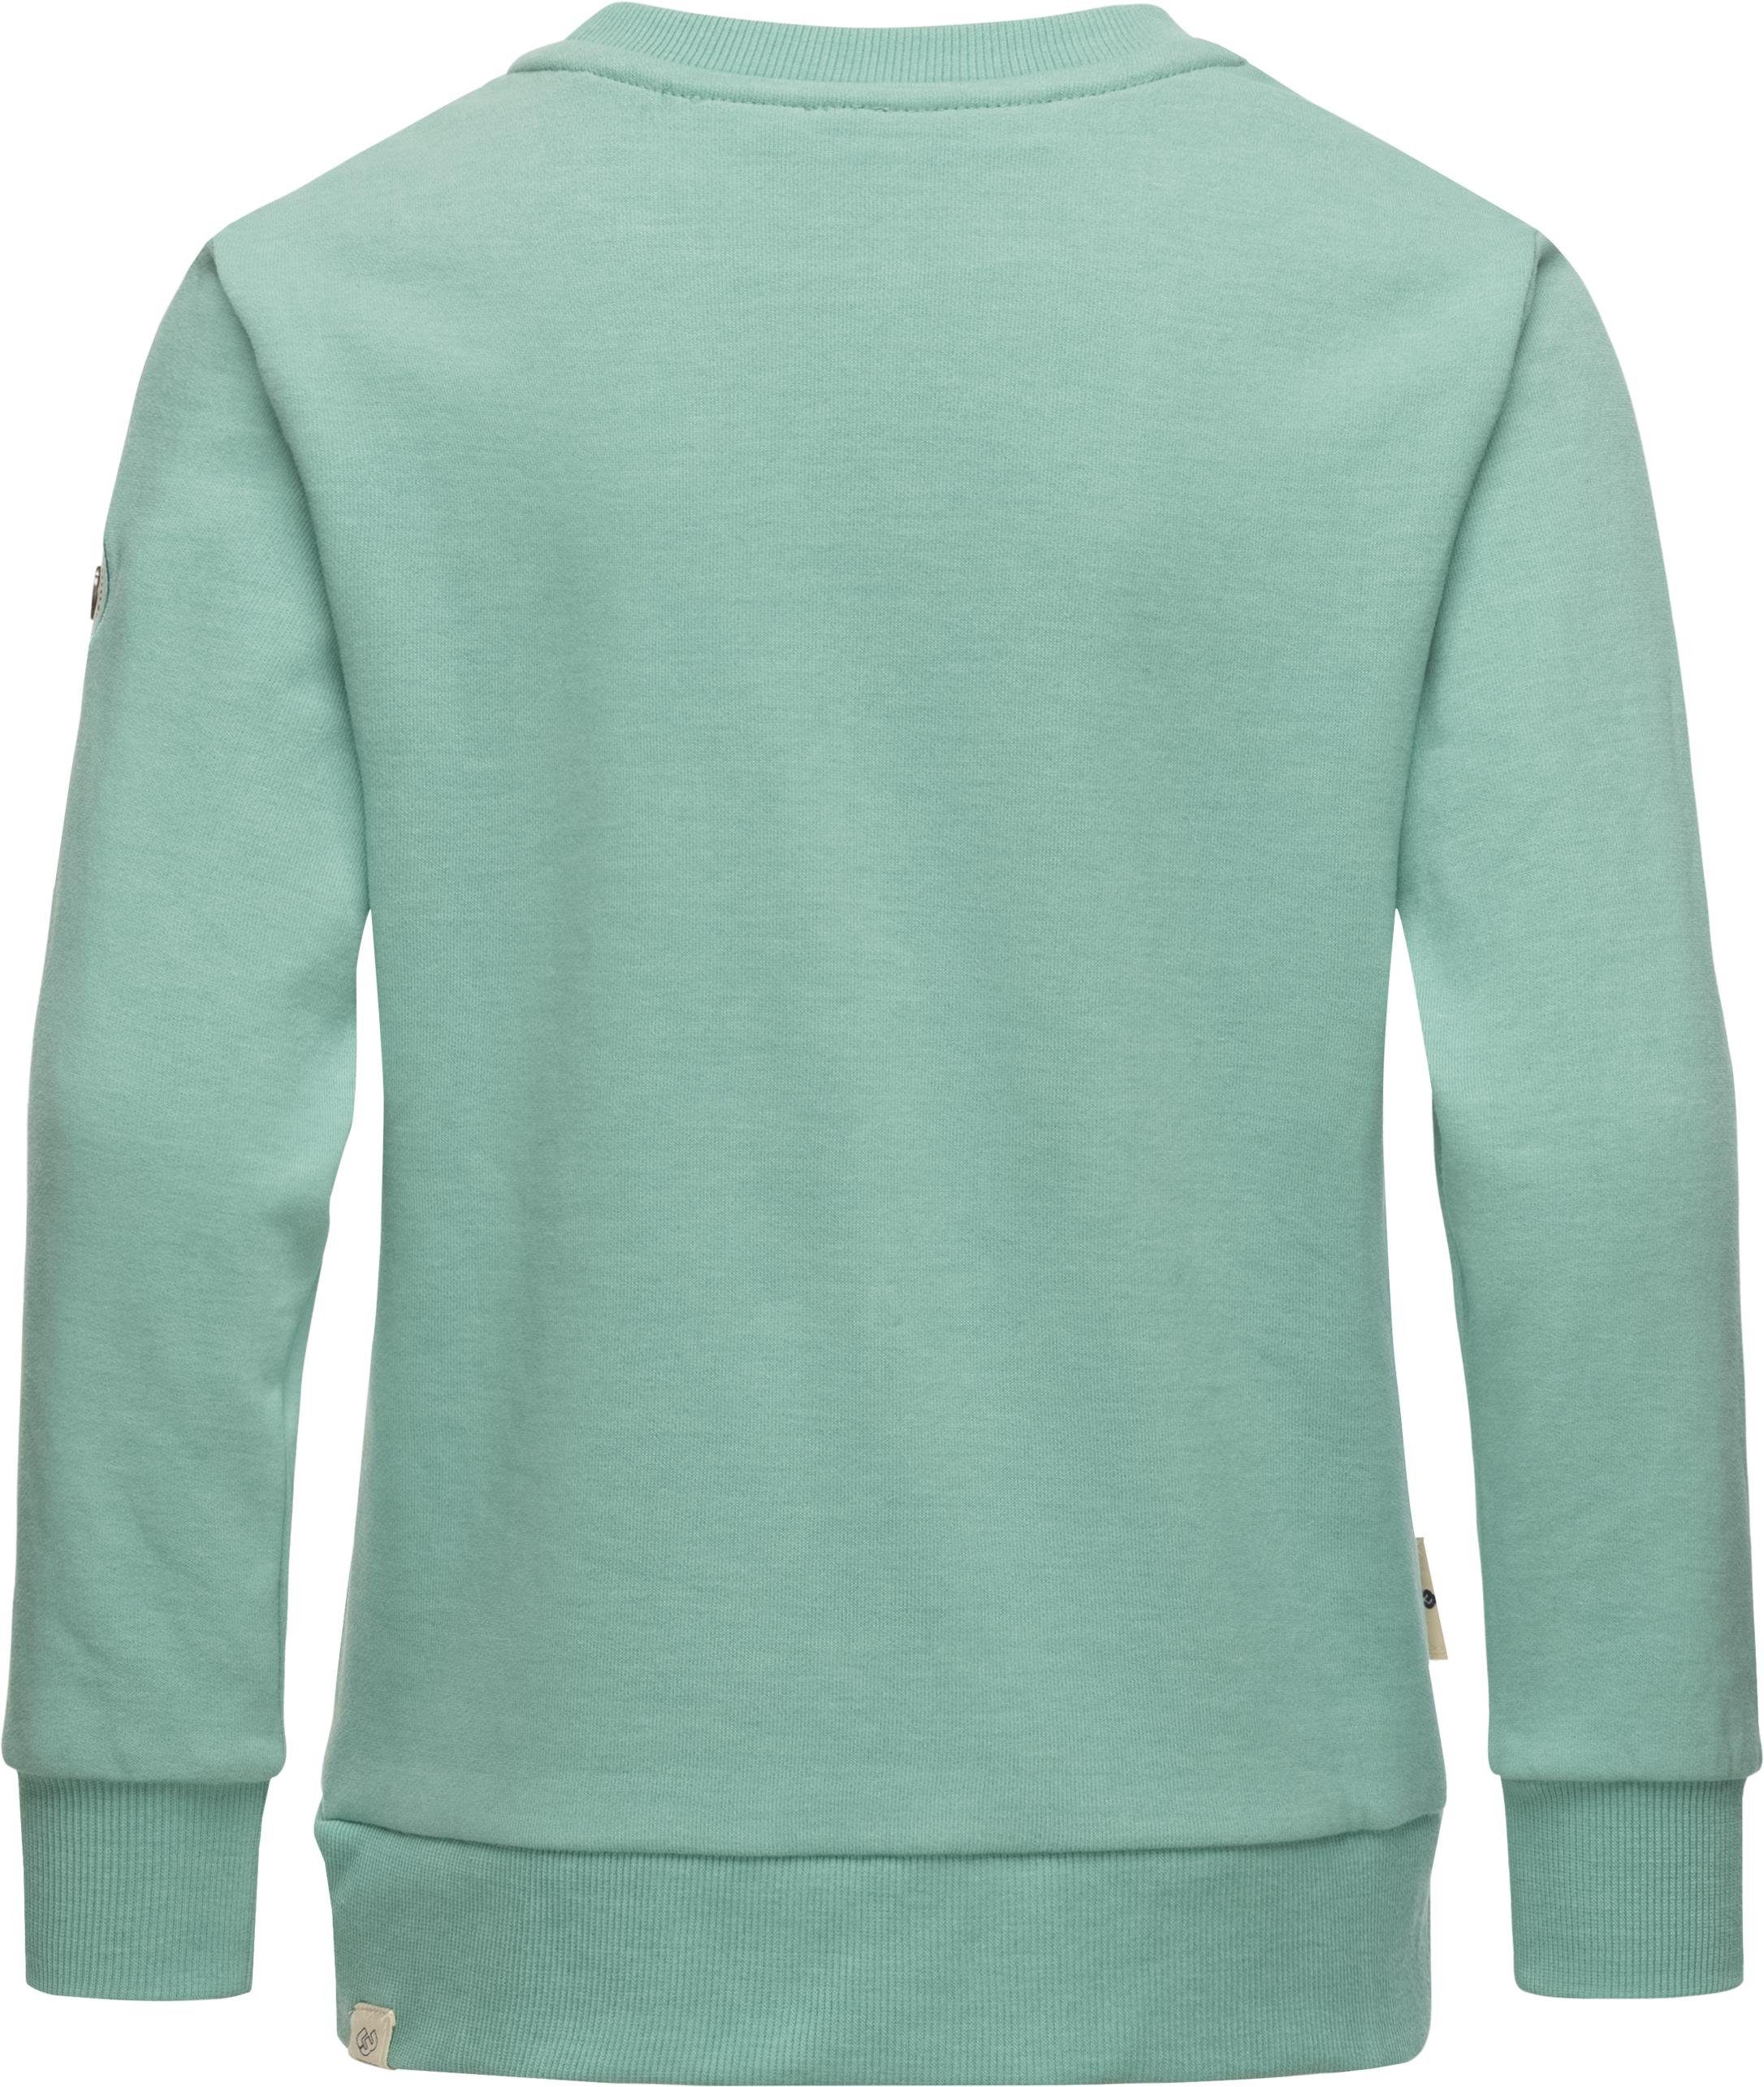 Sweatshirt Sweater Organic Evka Ragwear stylisches Mädchen Print mit blau coolem Print